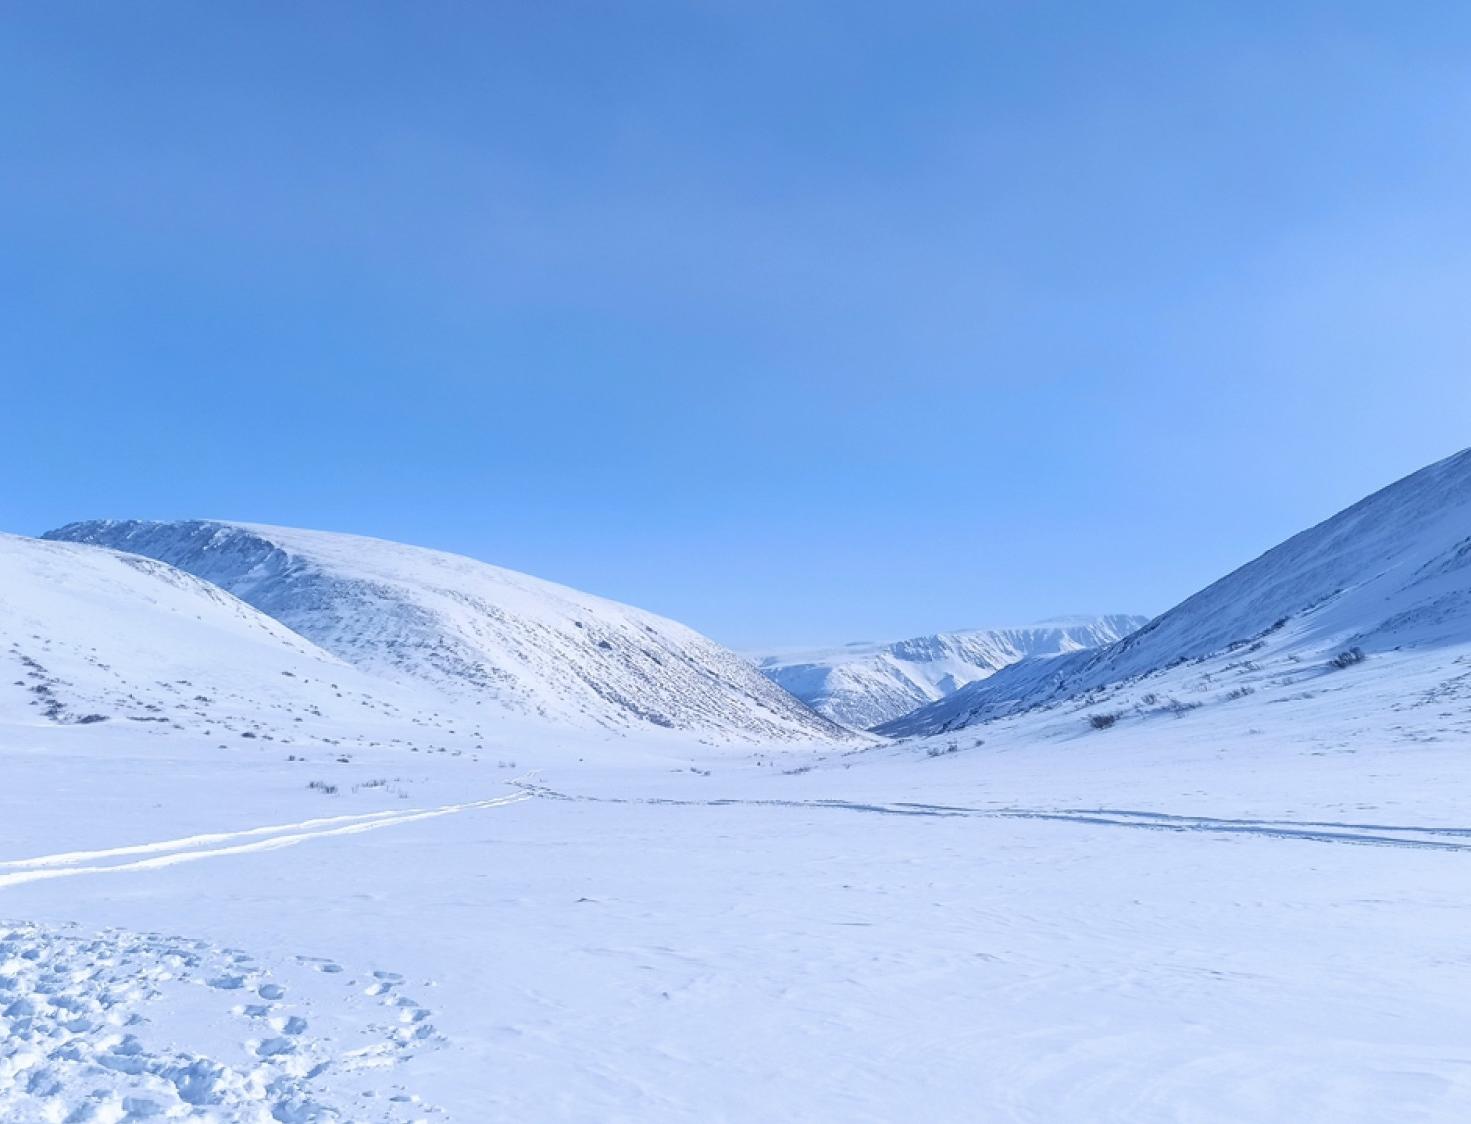 Ученые впервые пробурили ледник ИГАН, чтобы определить его возраст и получить ценные сведения для изучения климата 